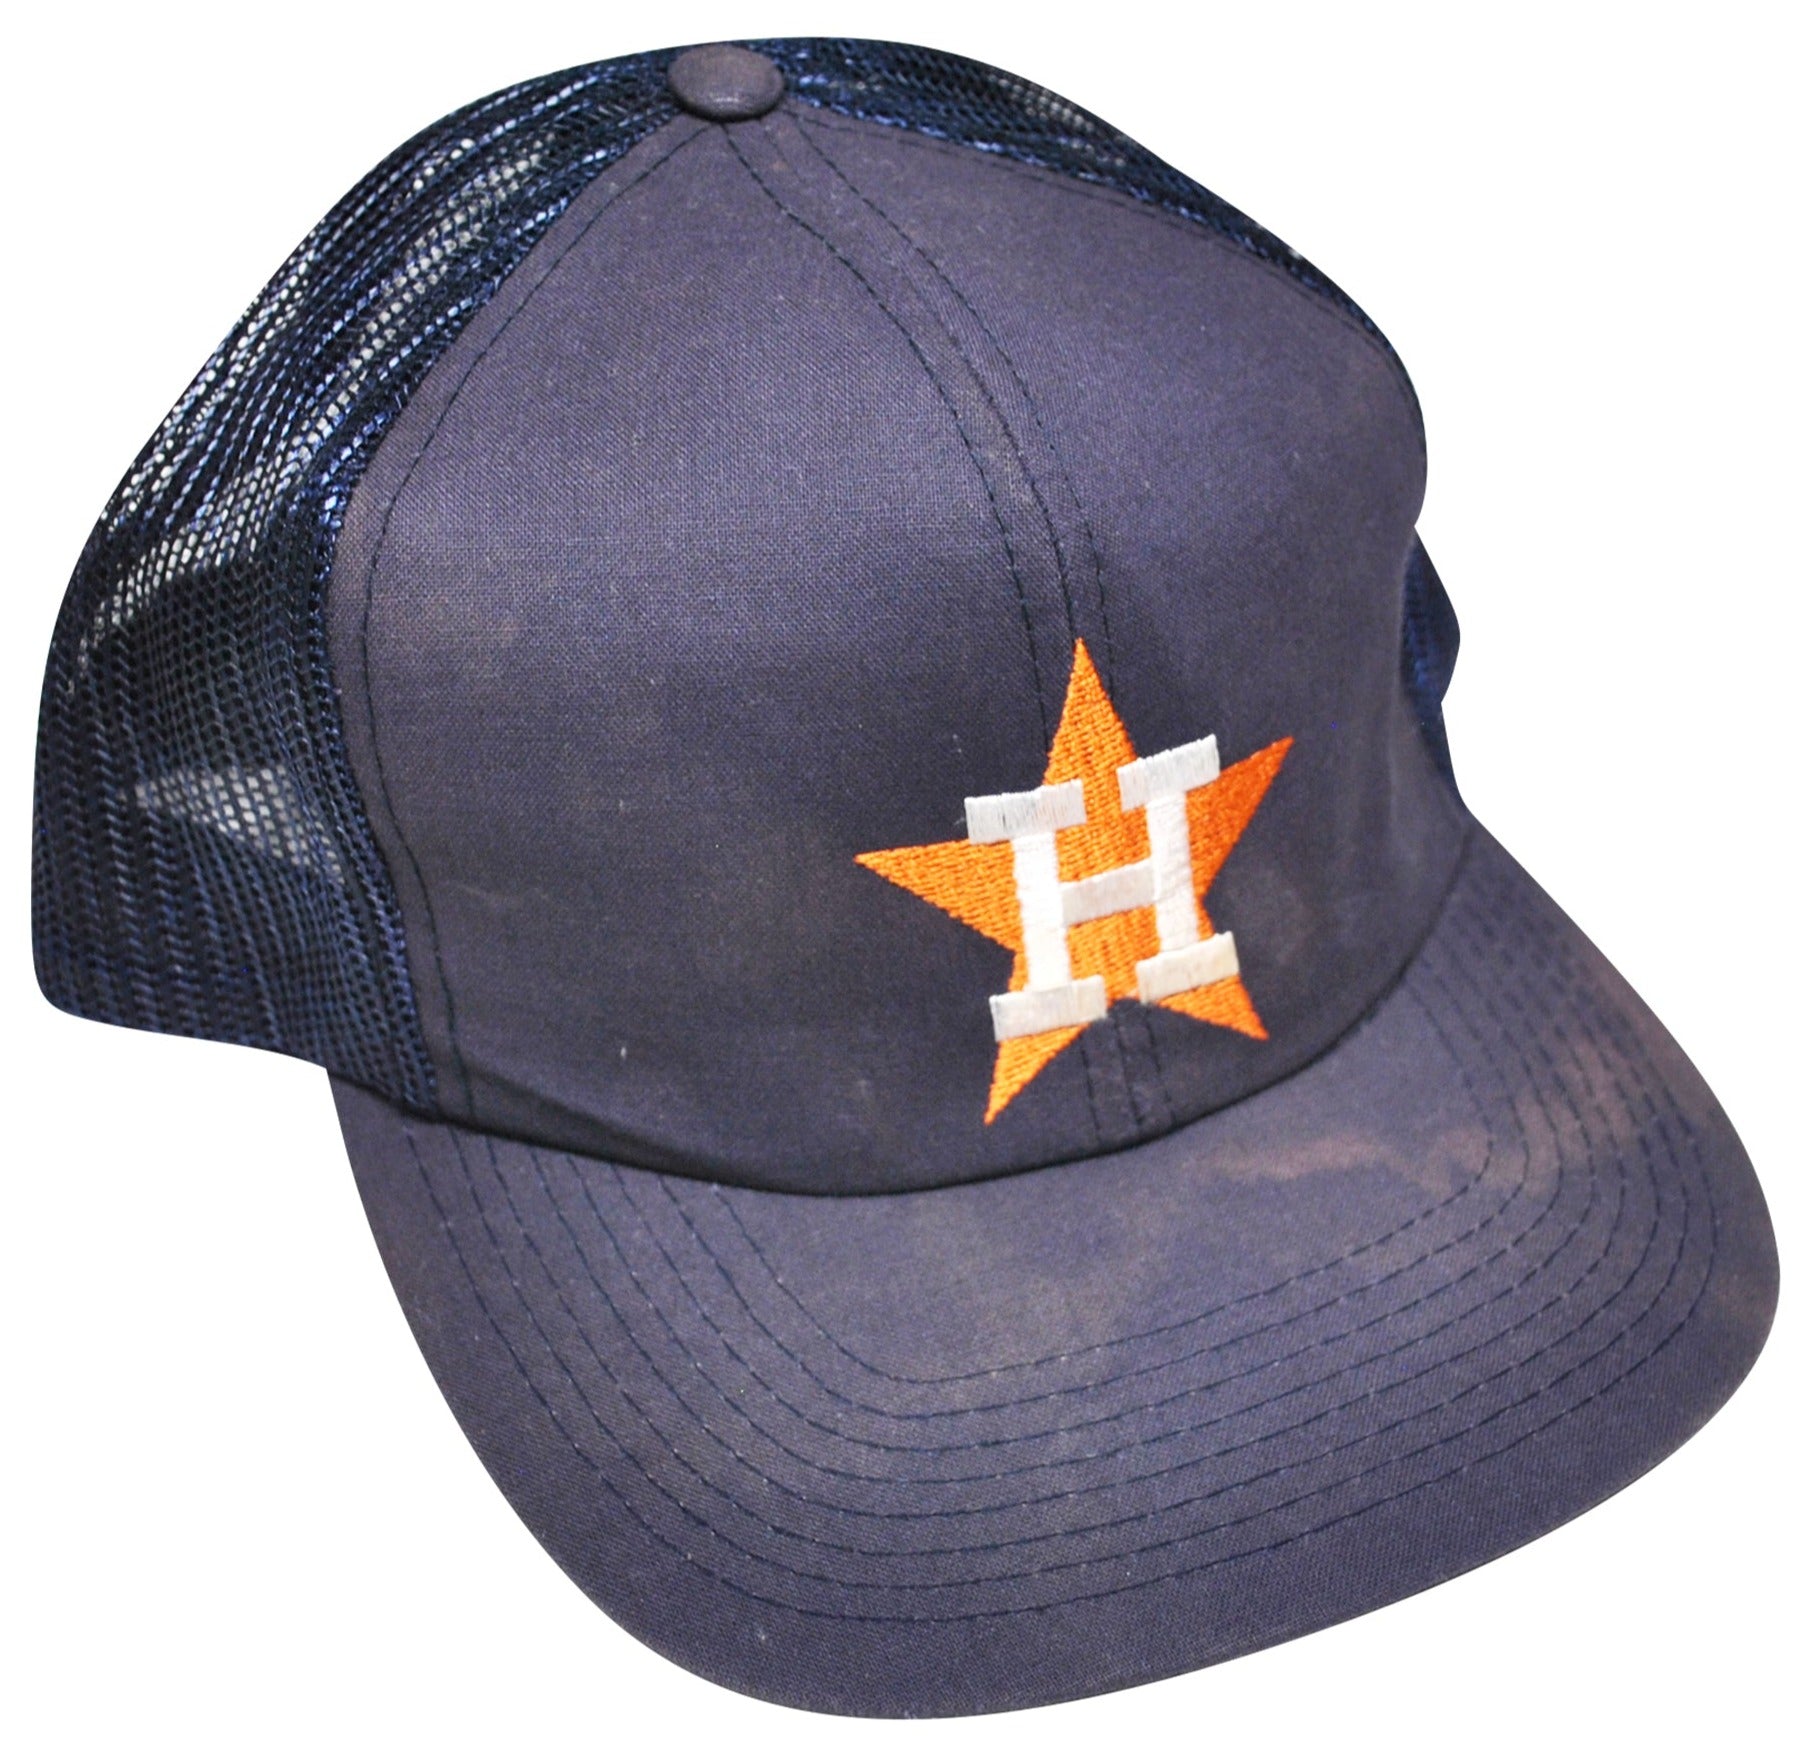 Vintage Astros Cap 